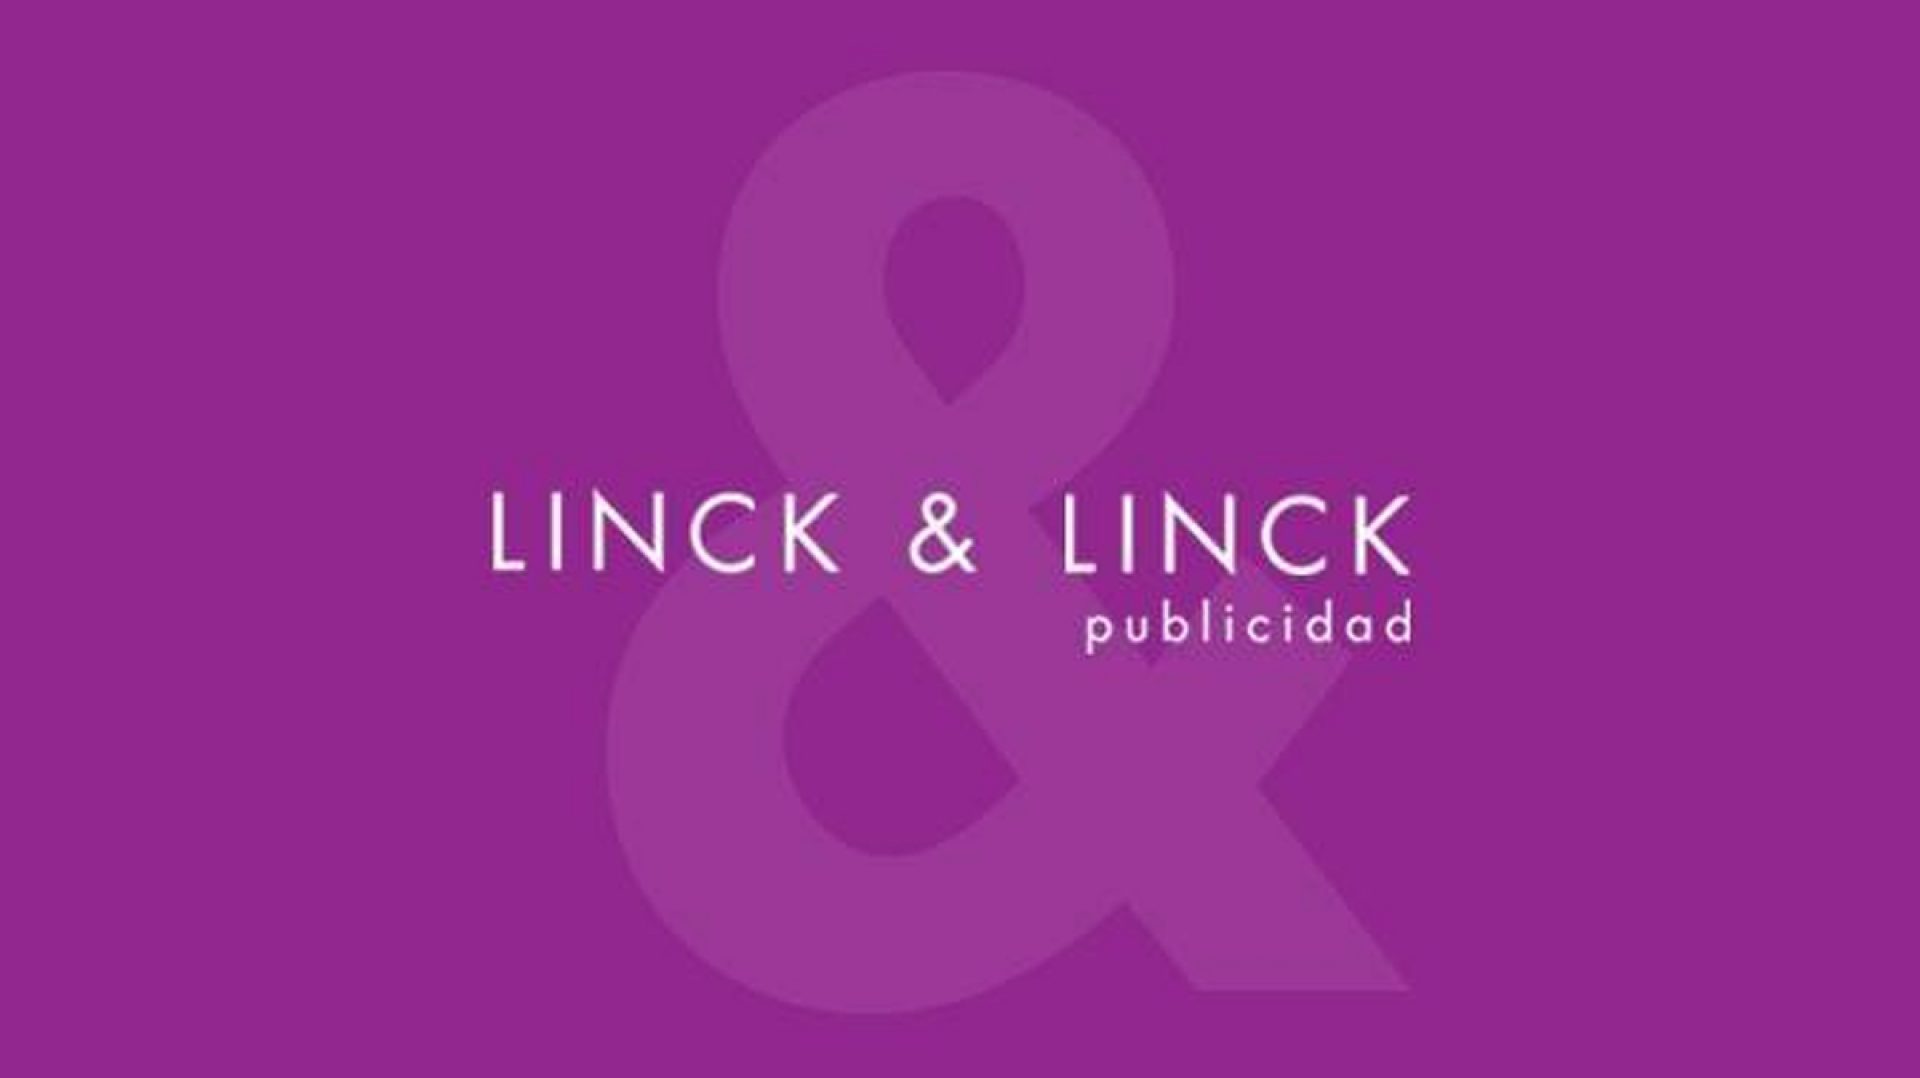 Linck & Linck